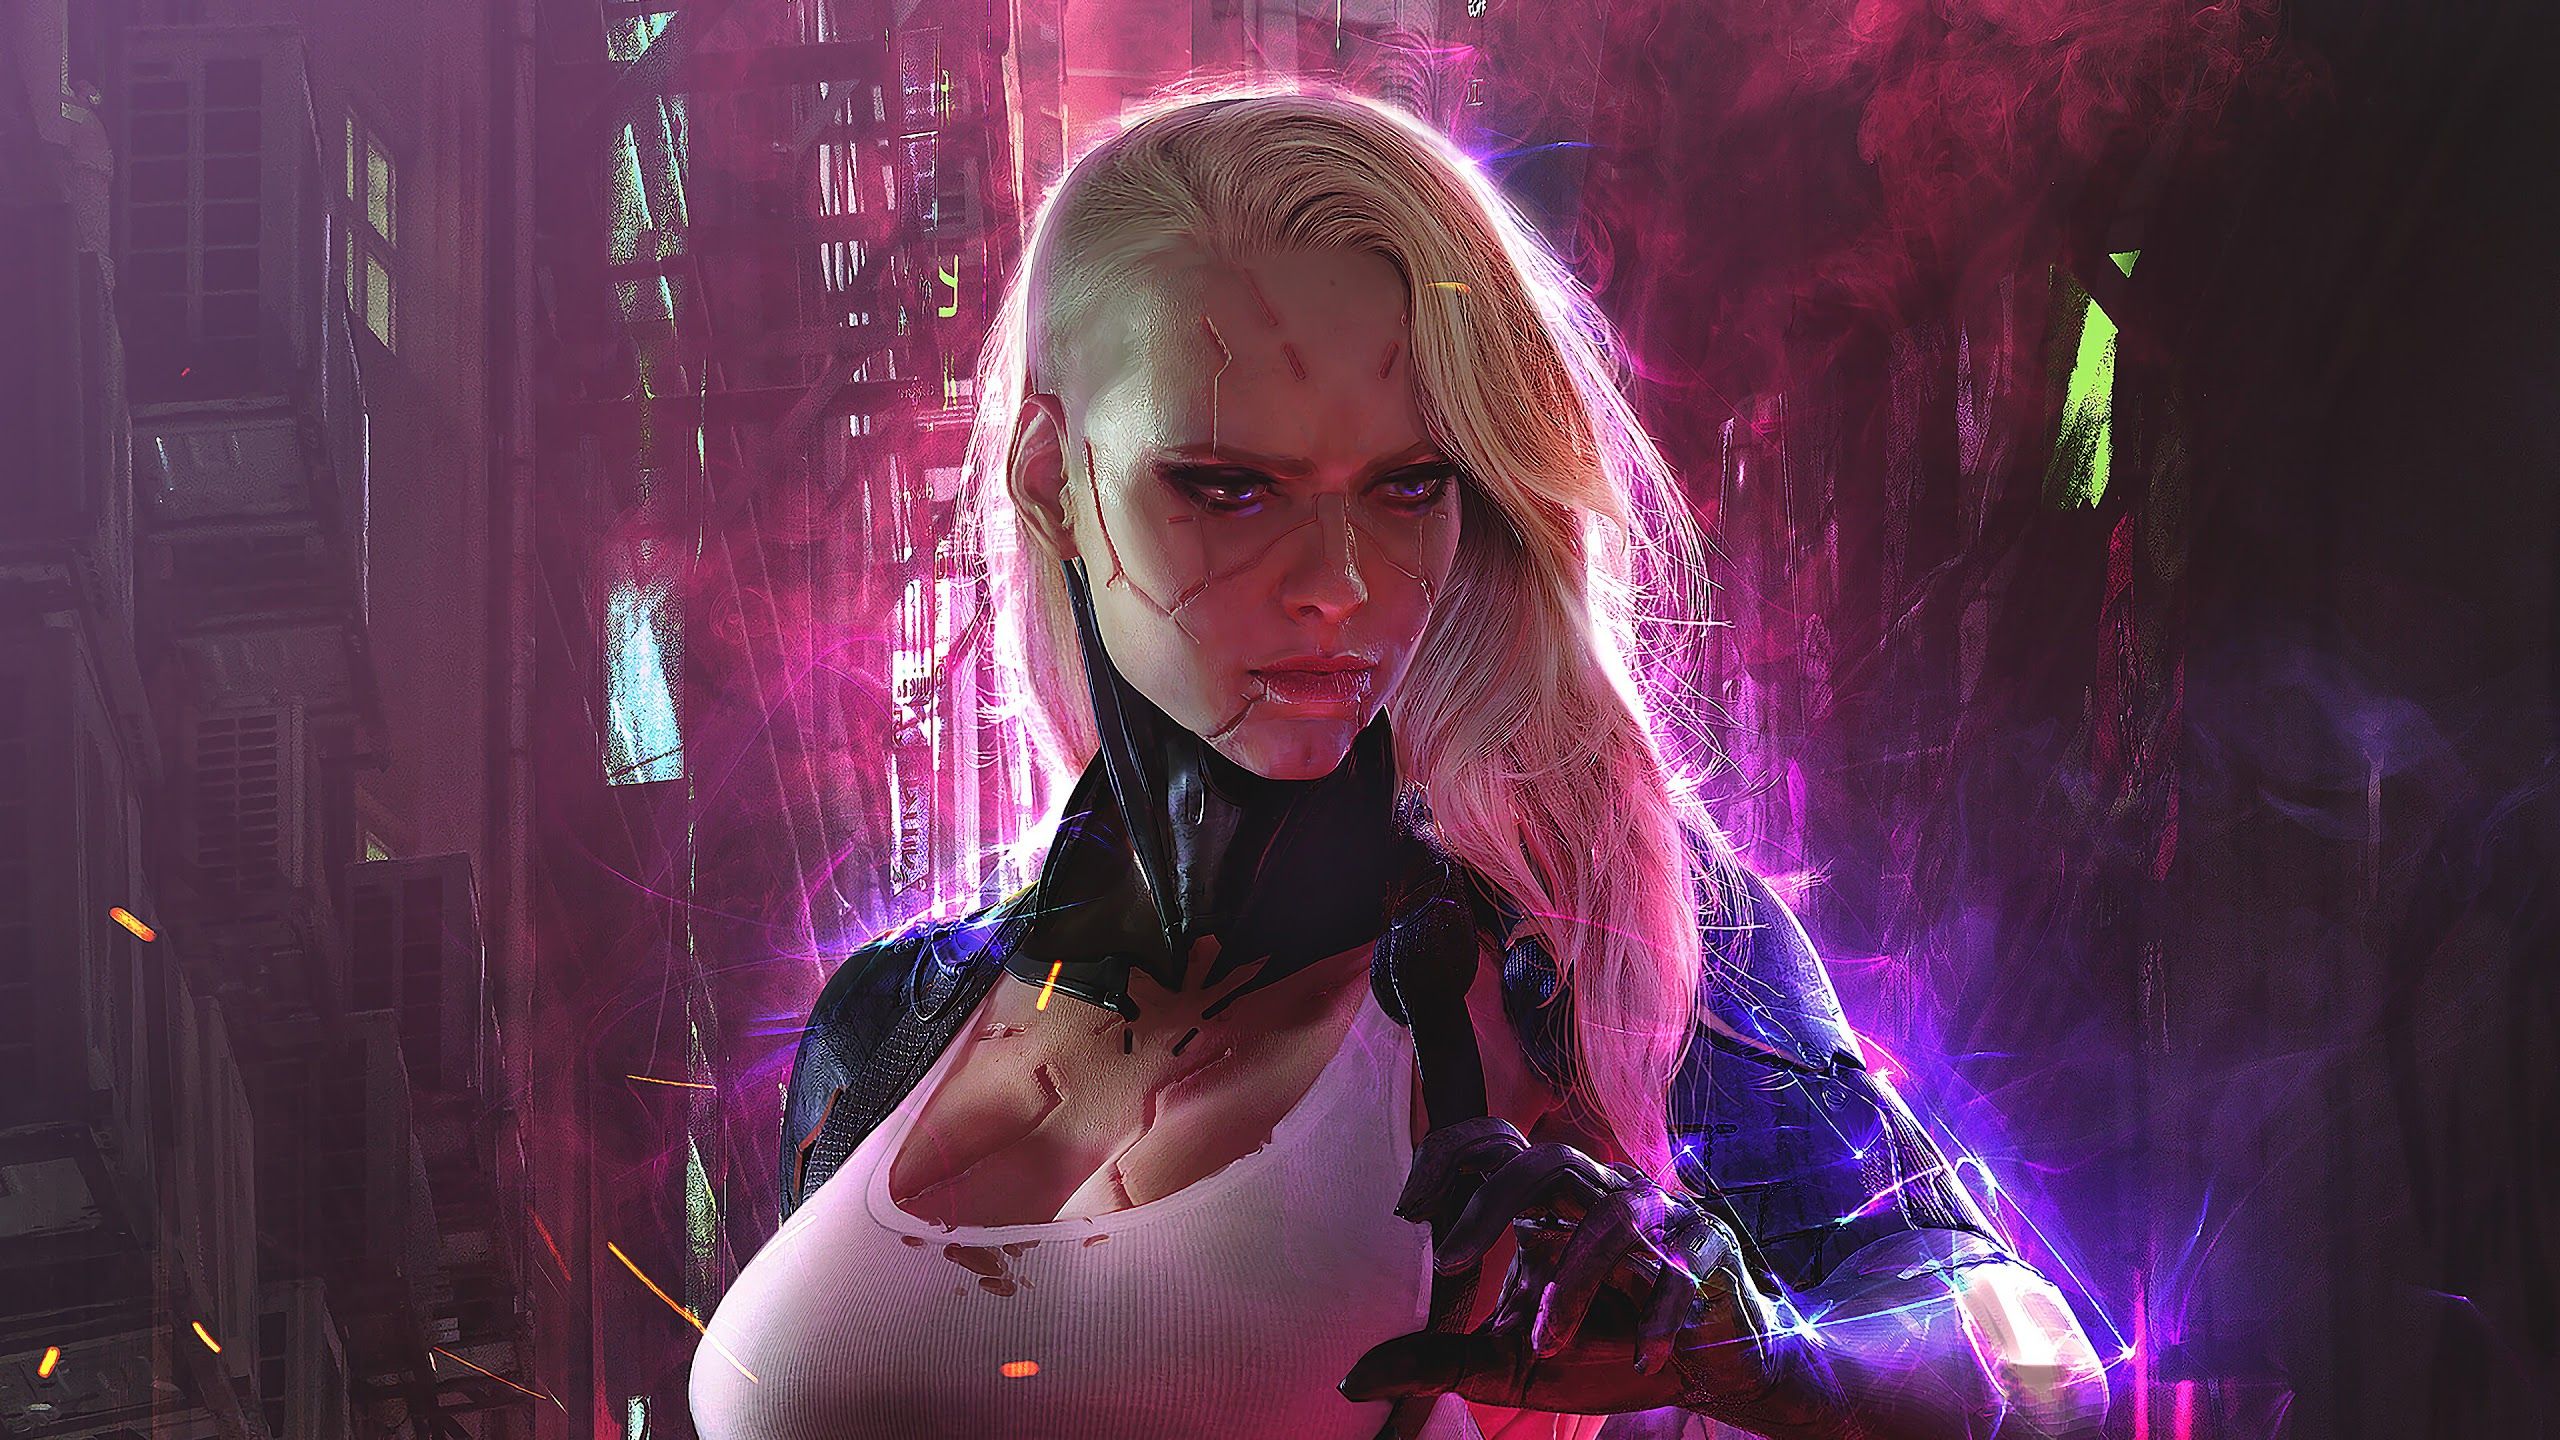 Cyberpunk Girl Sci Fi 4K Wallpaper Uhdpaper.com